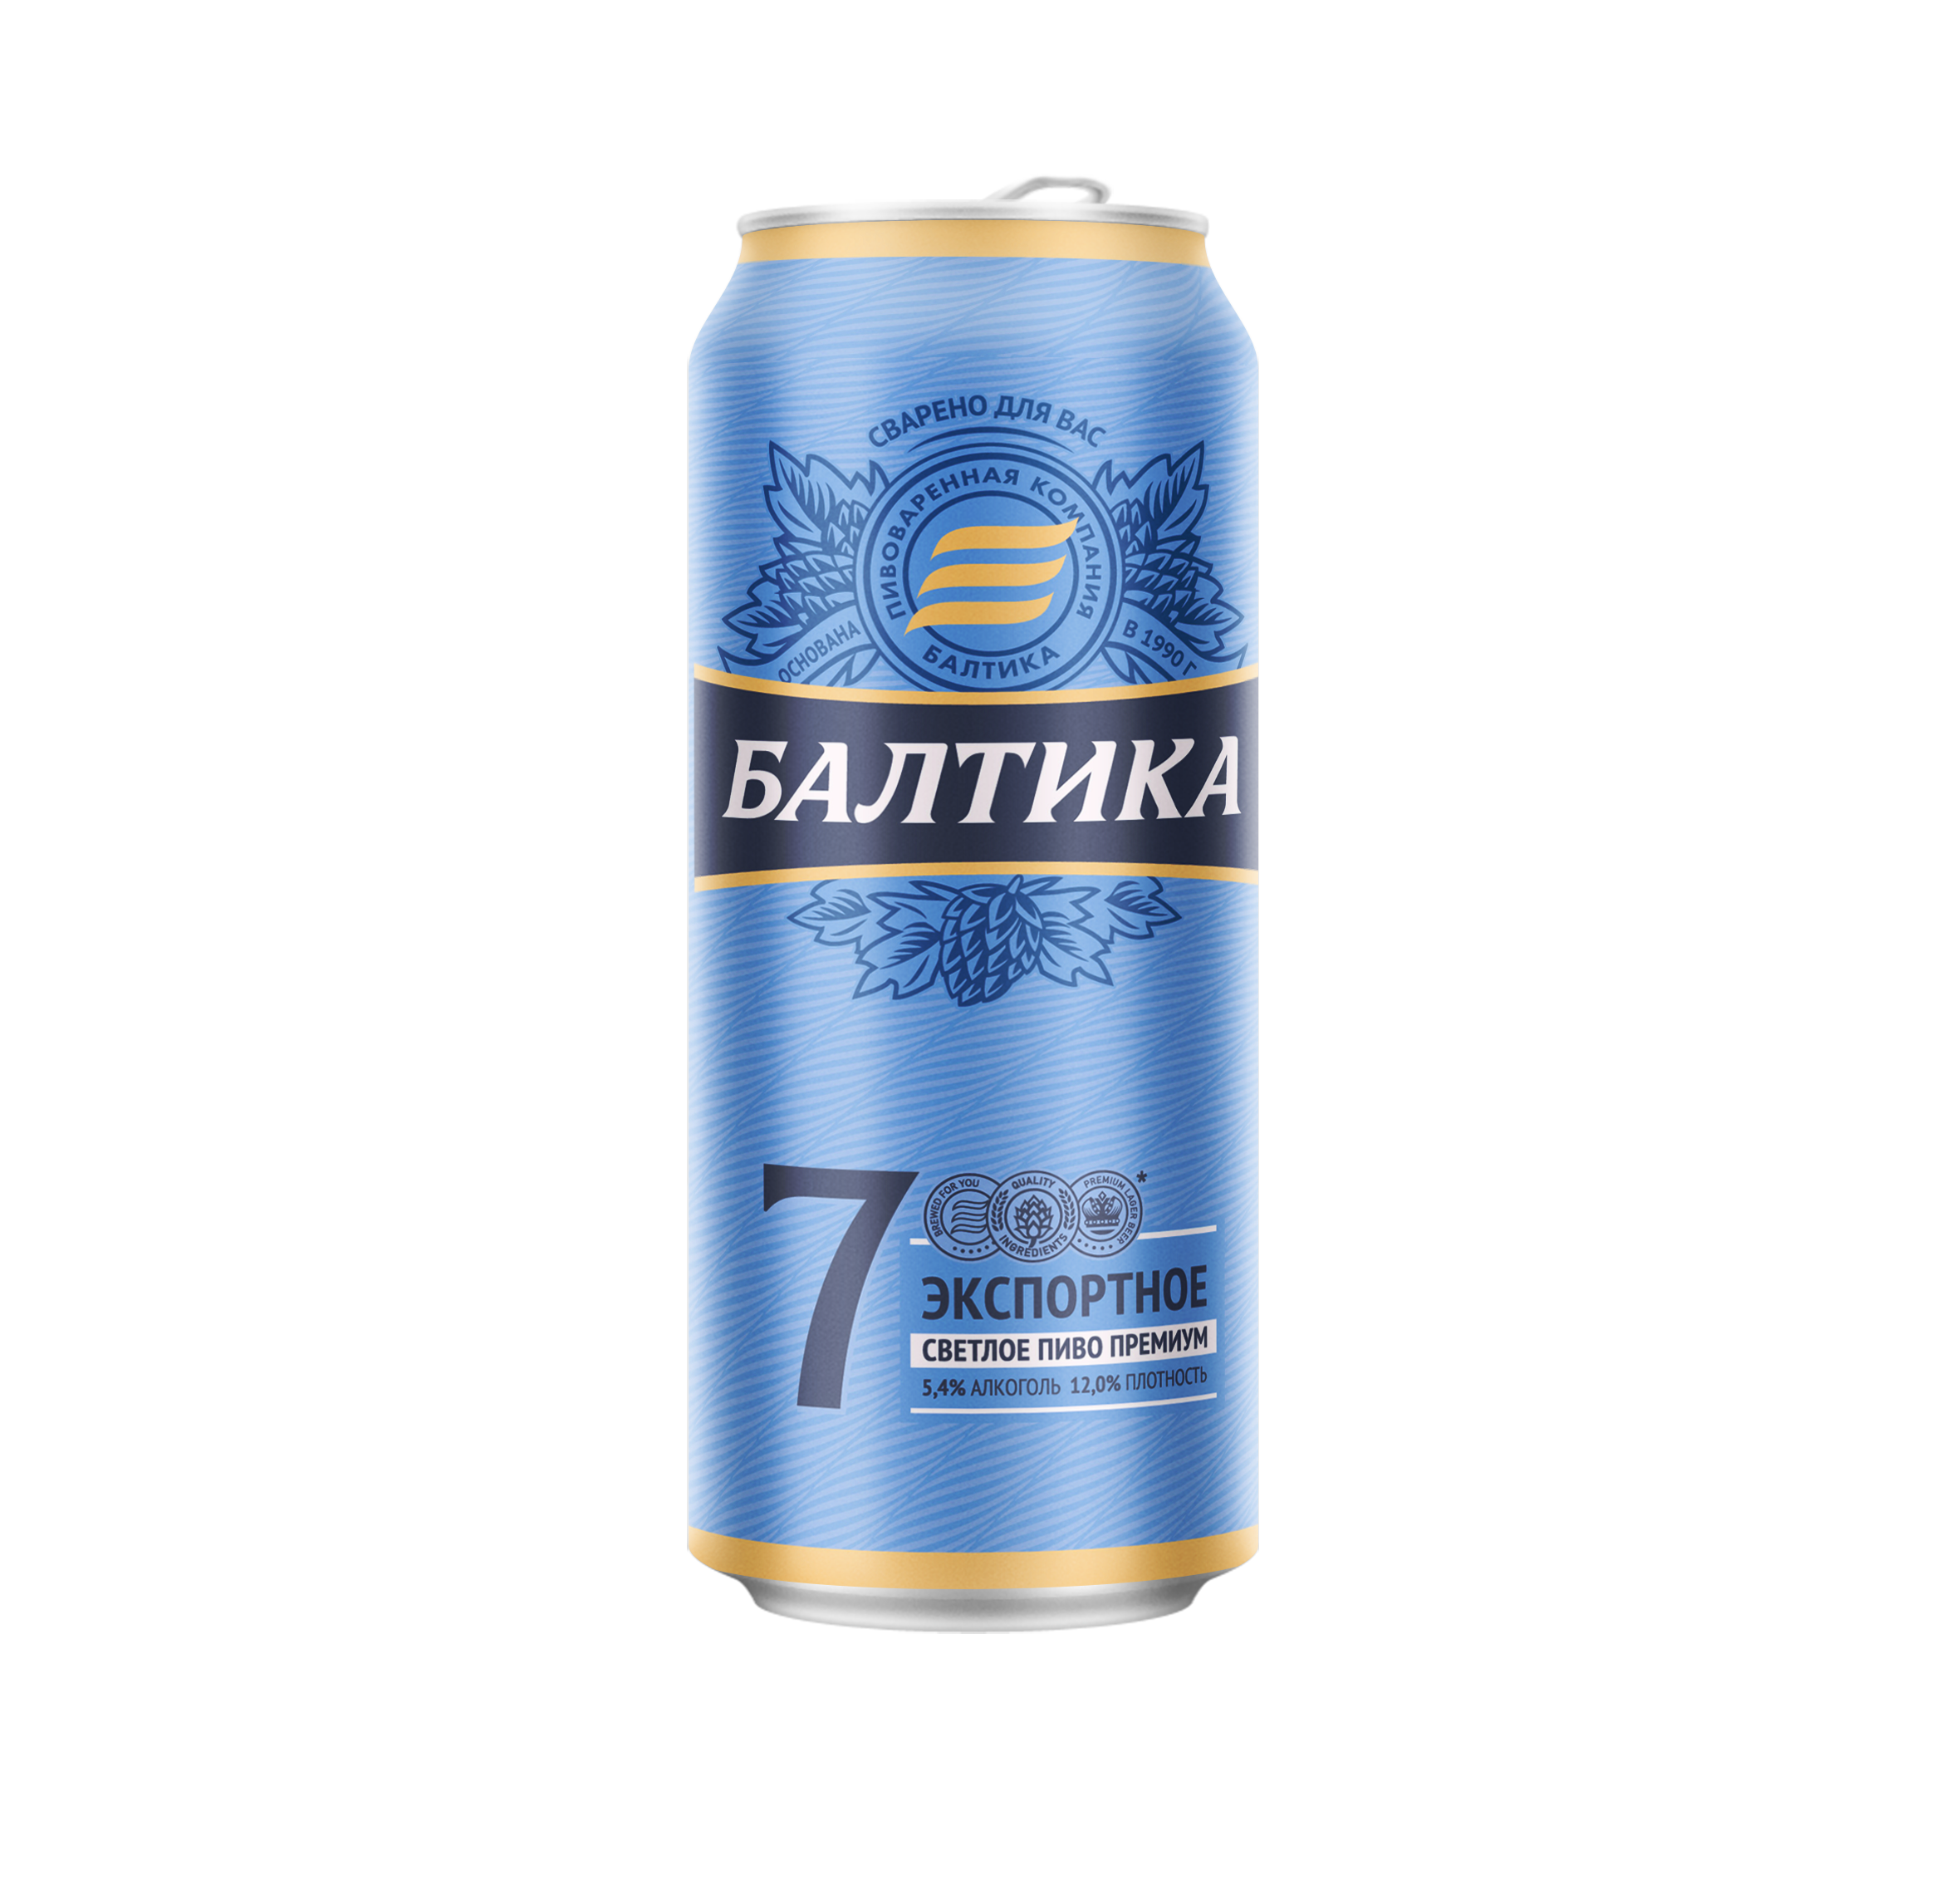 Пиво Балтика.